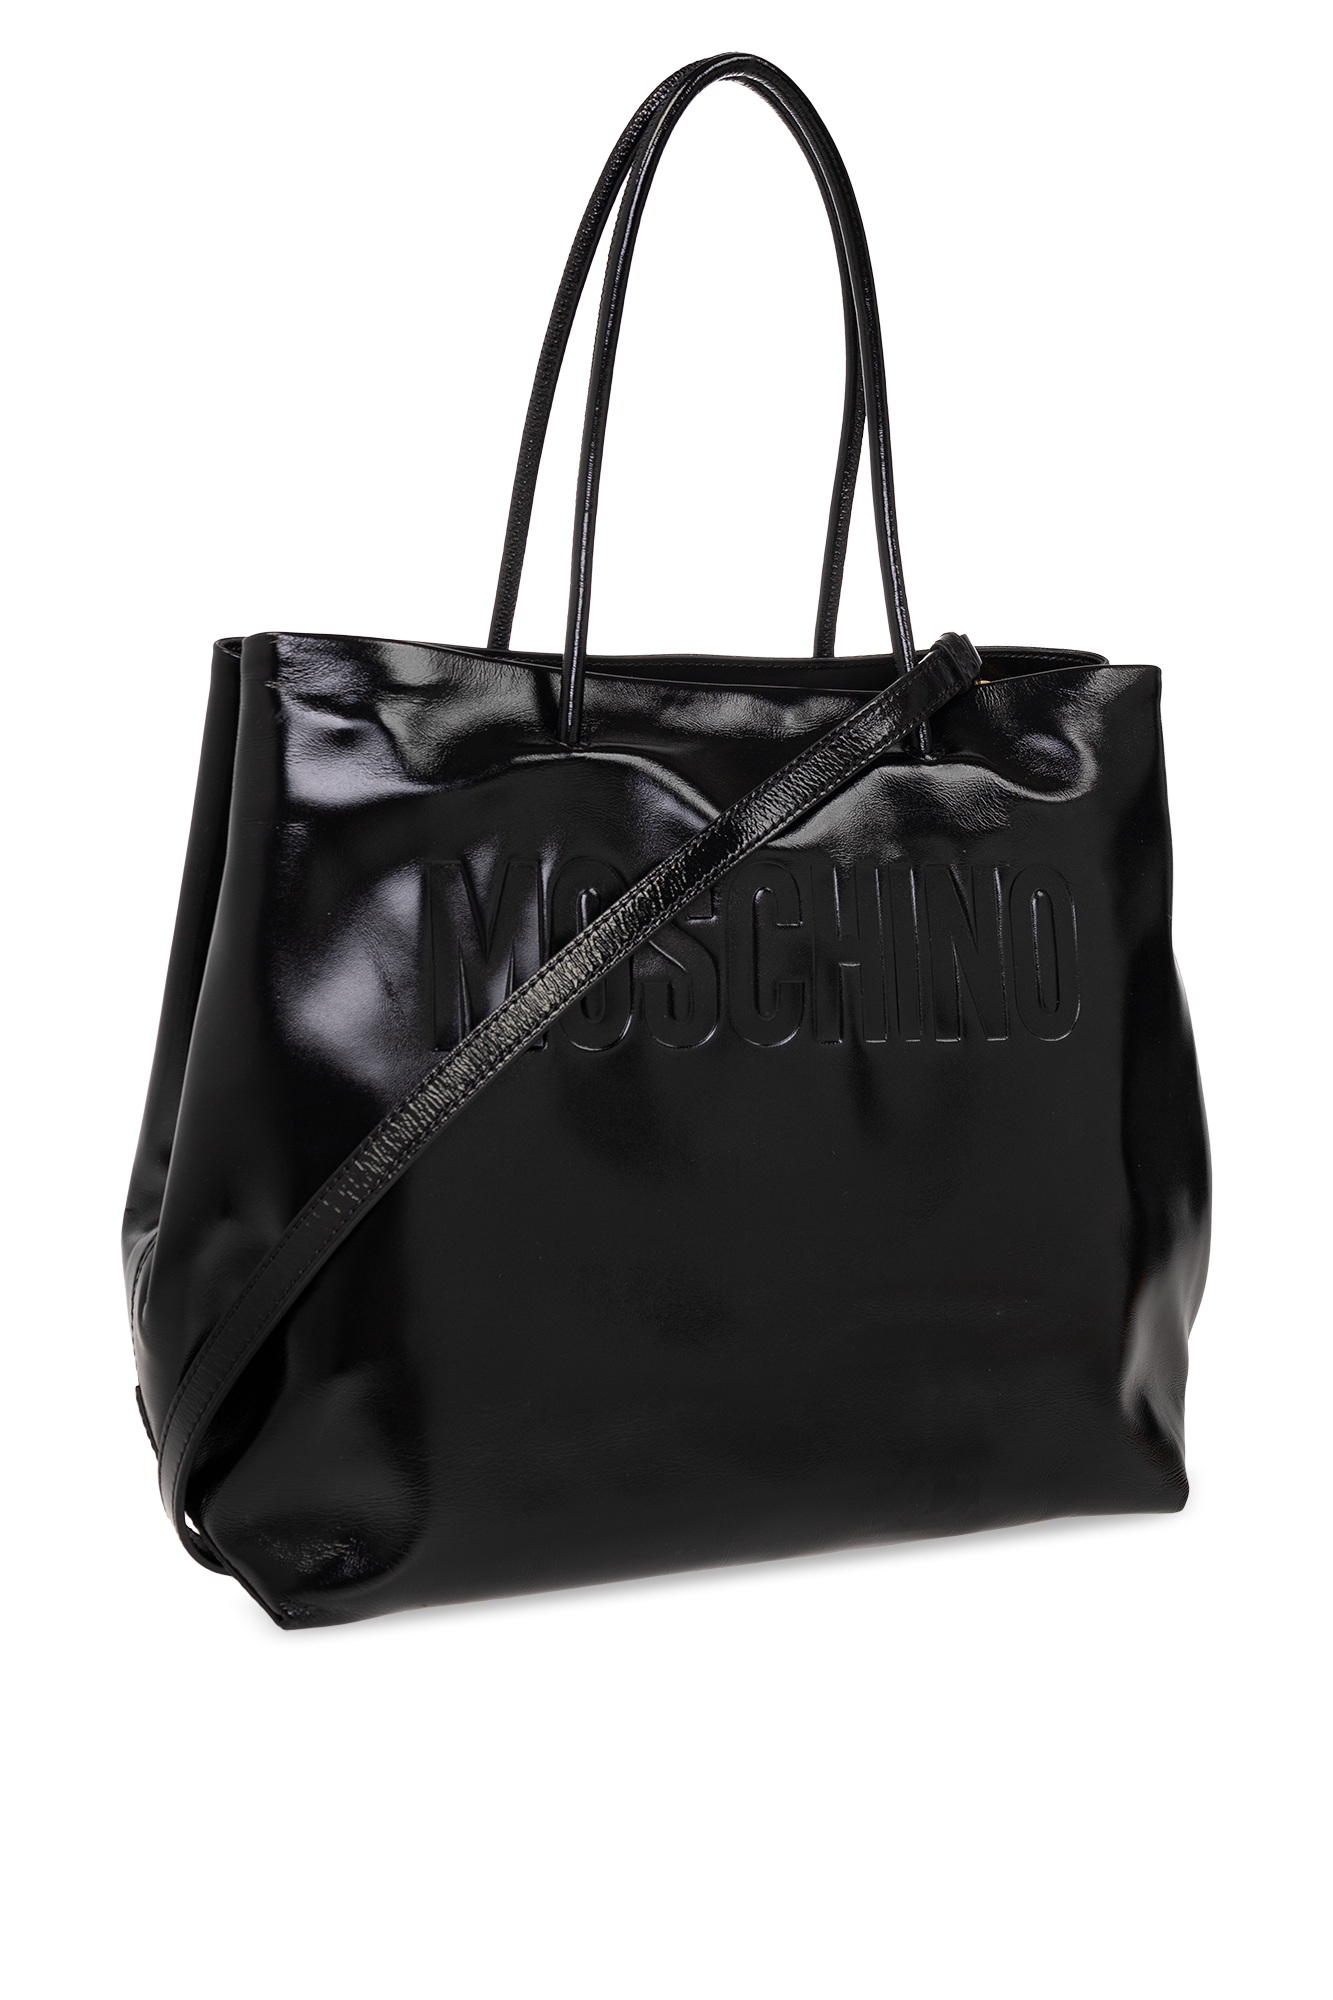 Black Shopper bag Moschino - Vitkac Germany